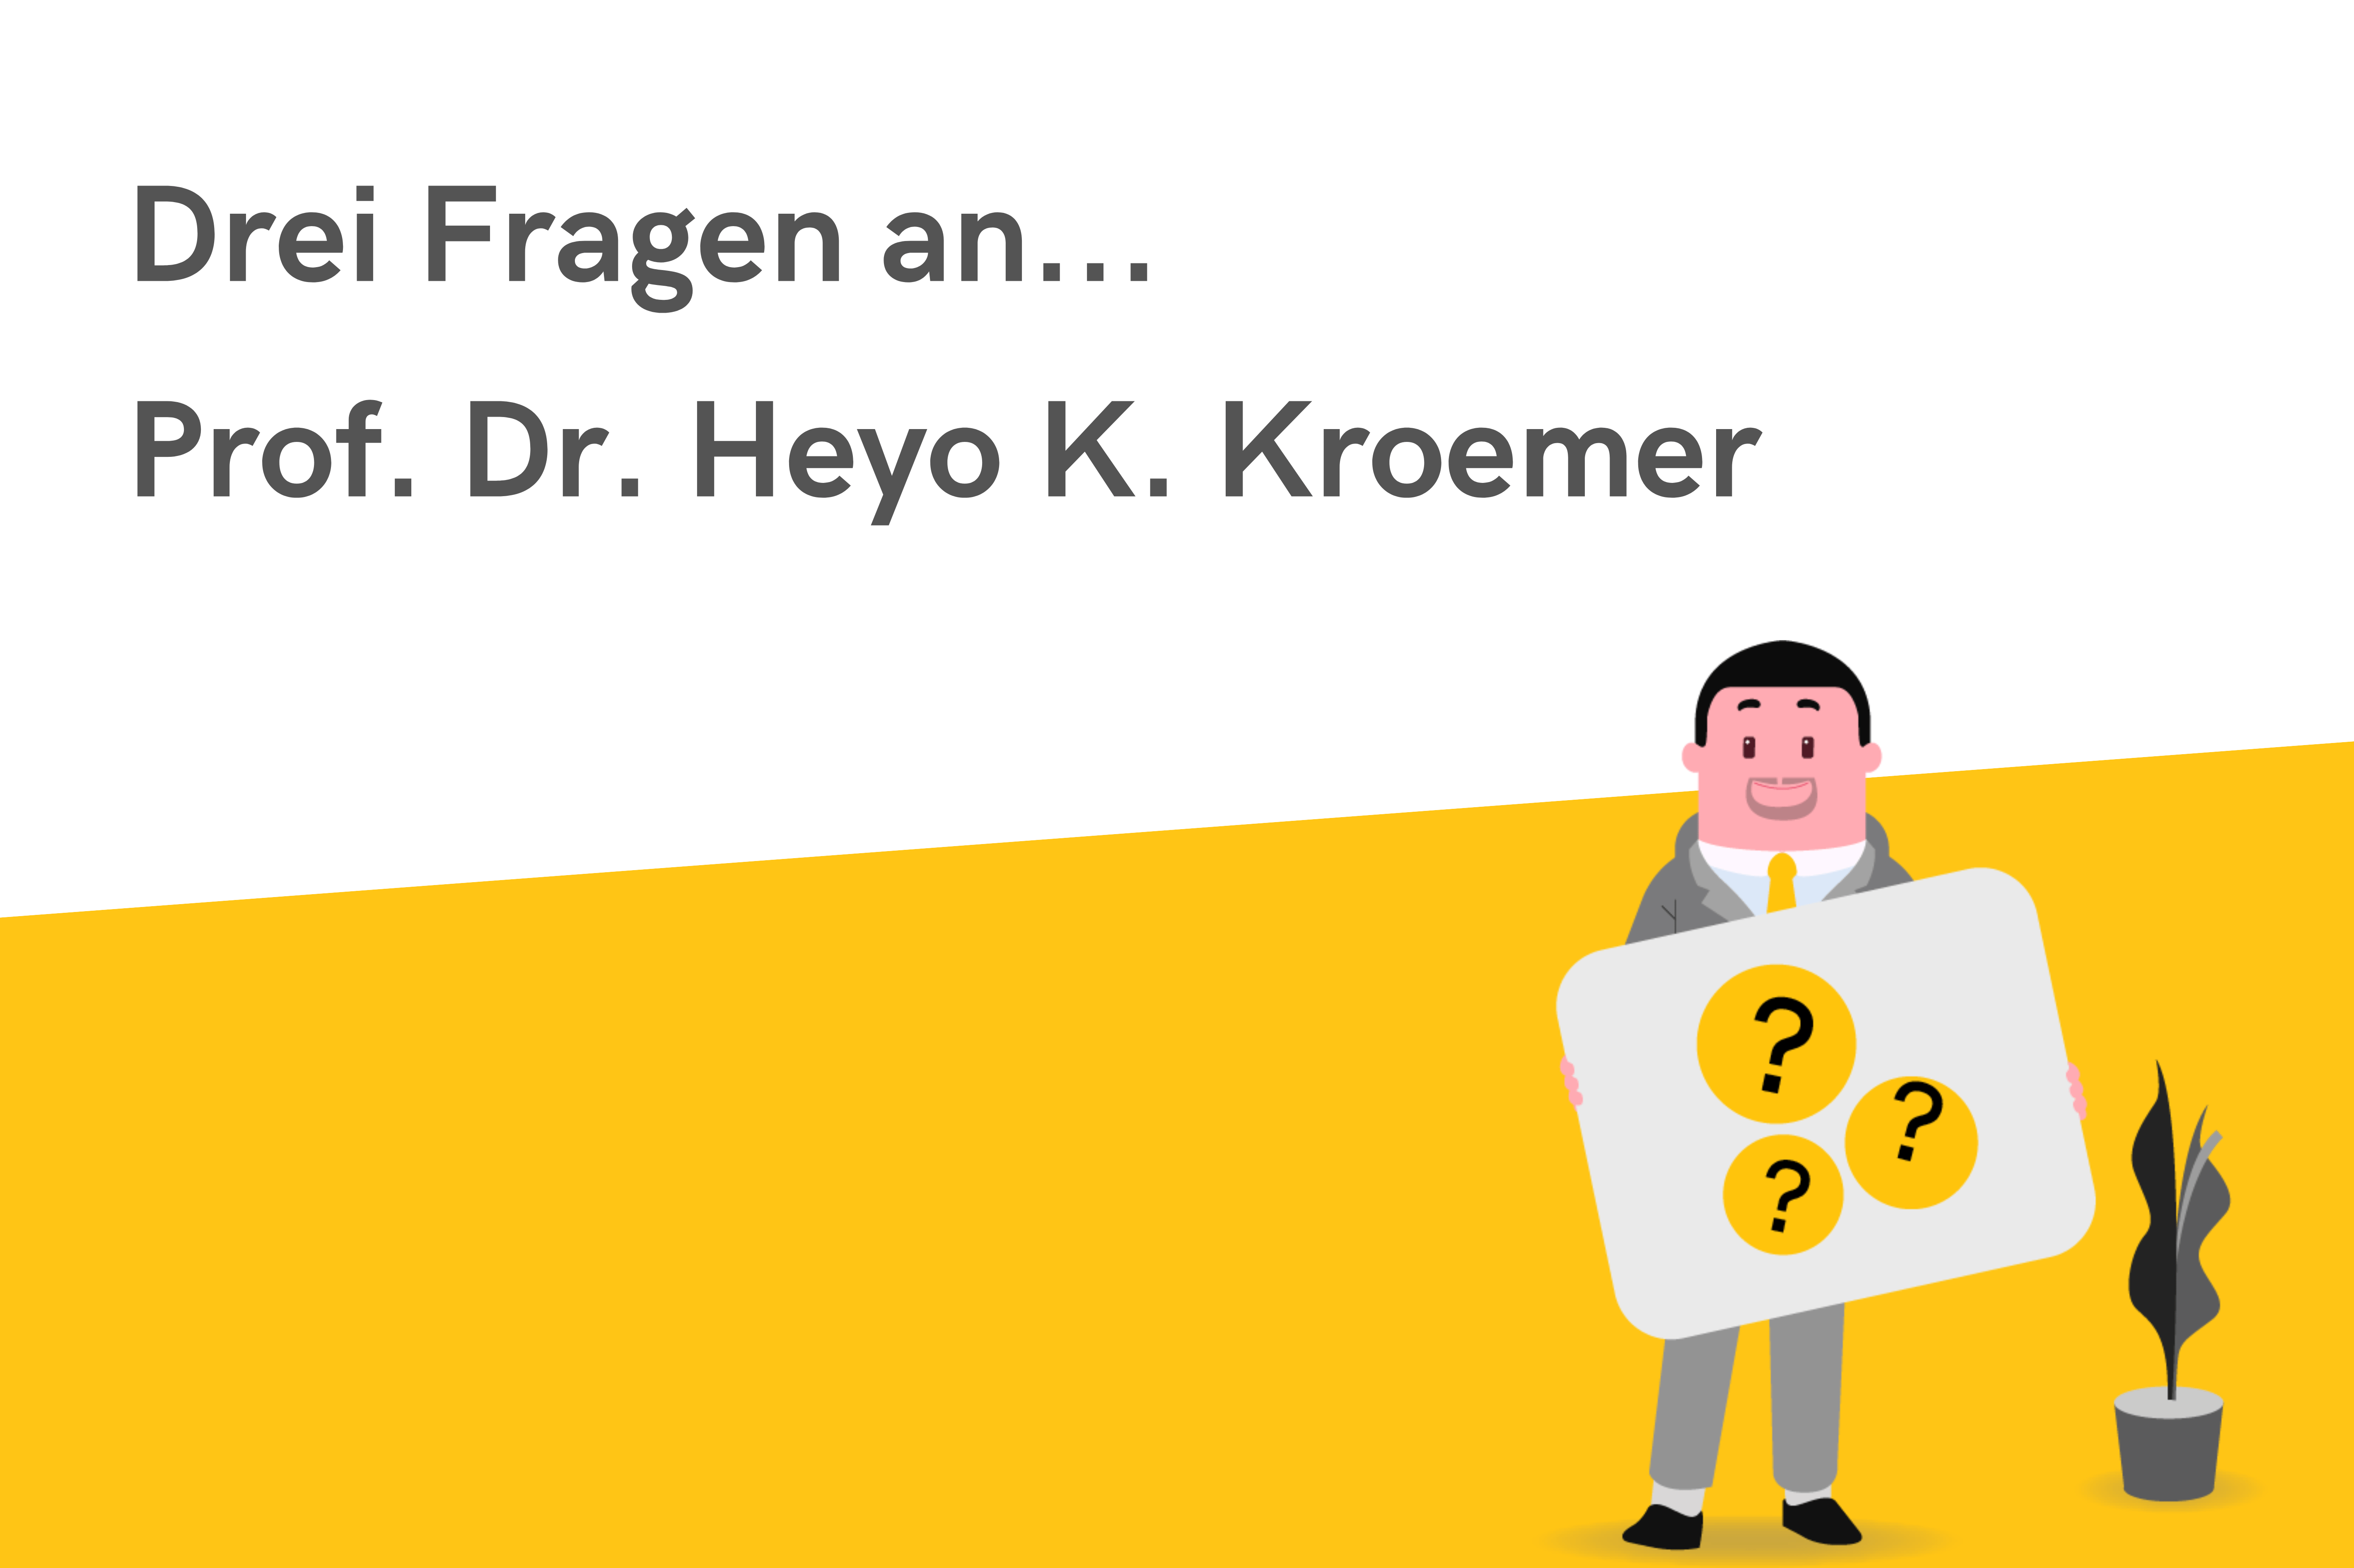 Drei Fragen an...Prof. Dr. Heyo K. Kroemer